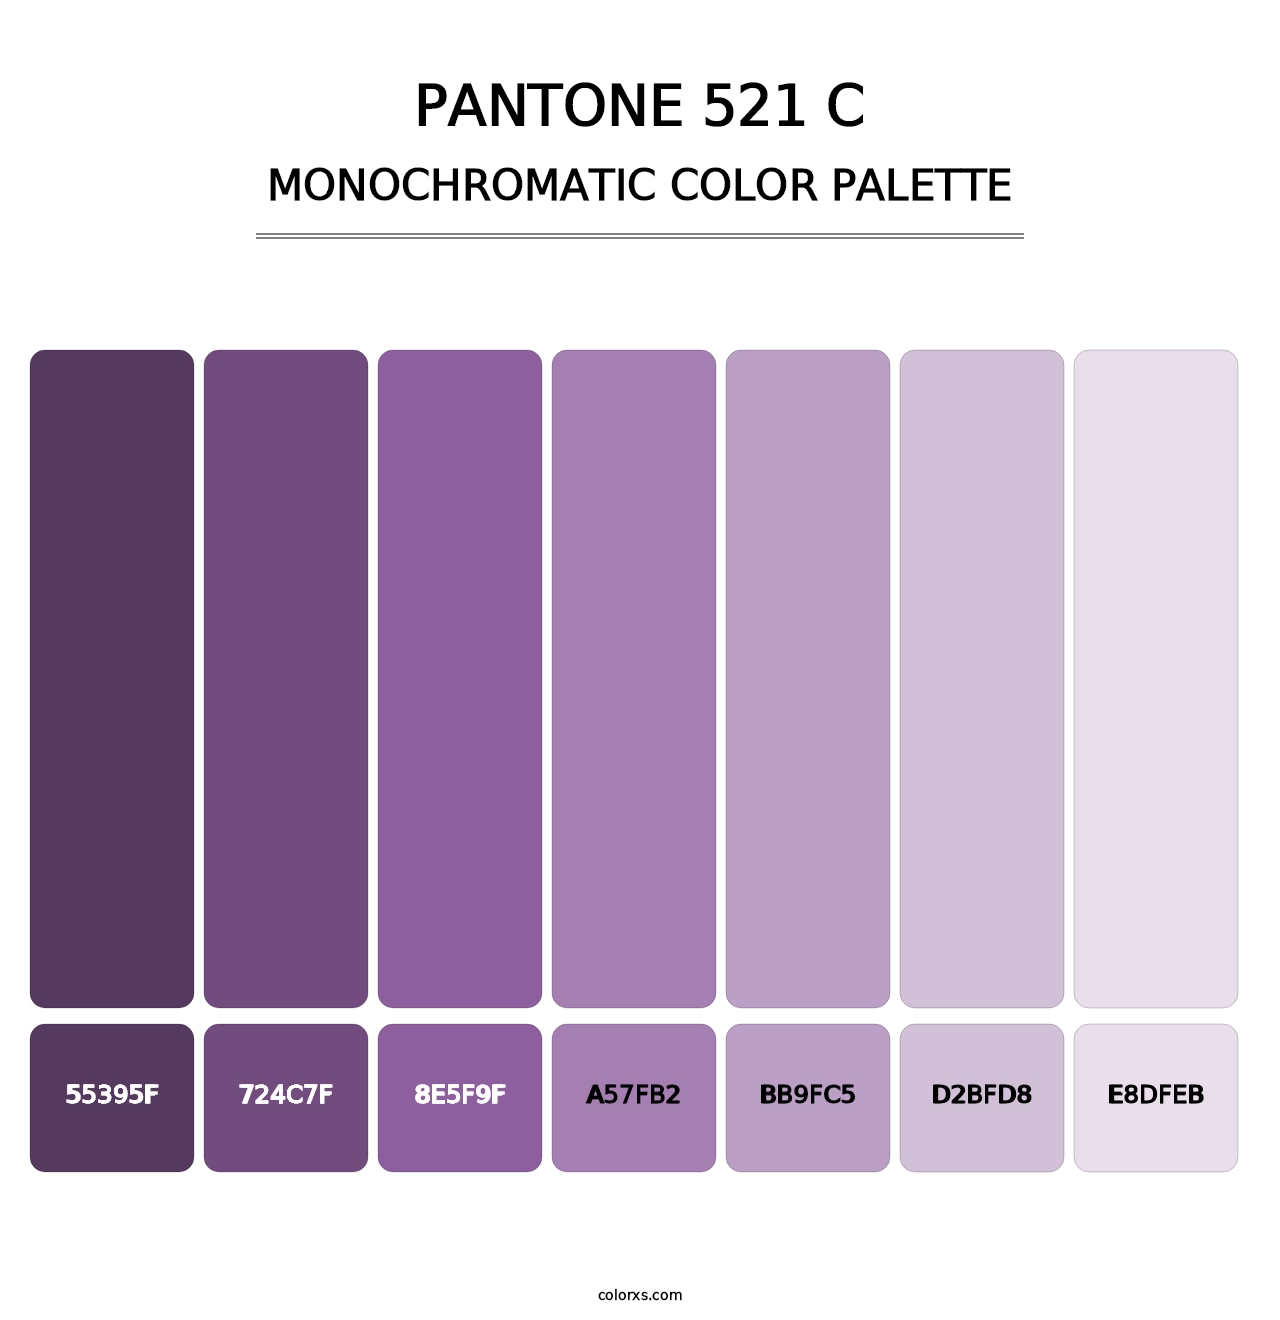 PANTONE 521 C - Monochromatic Color Palette